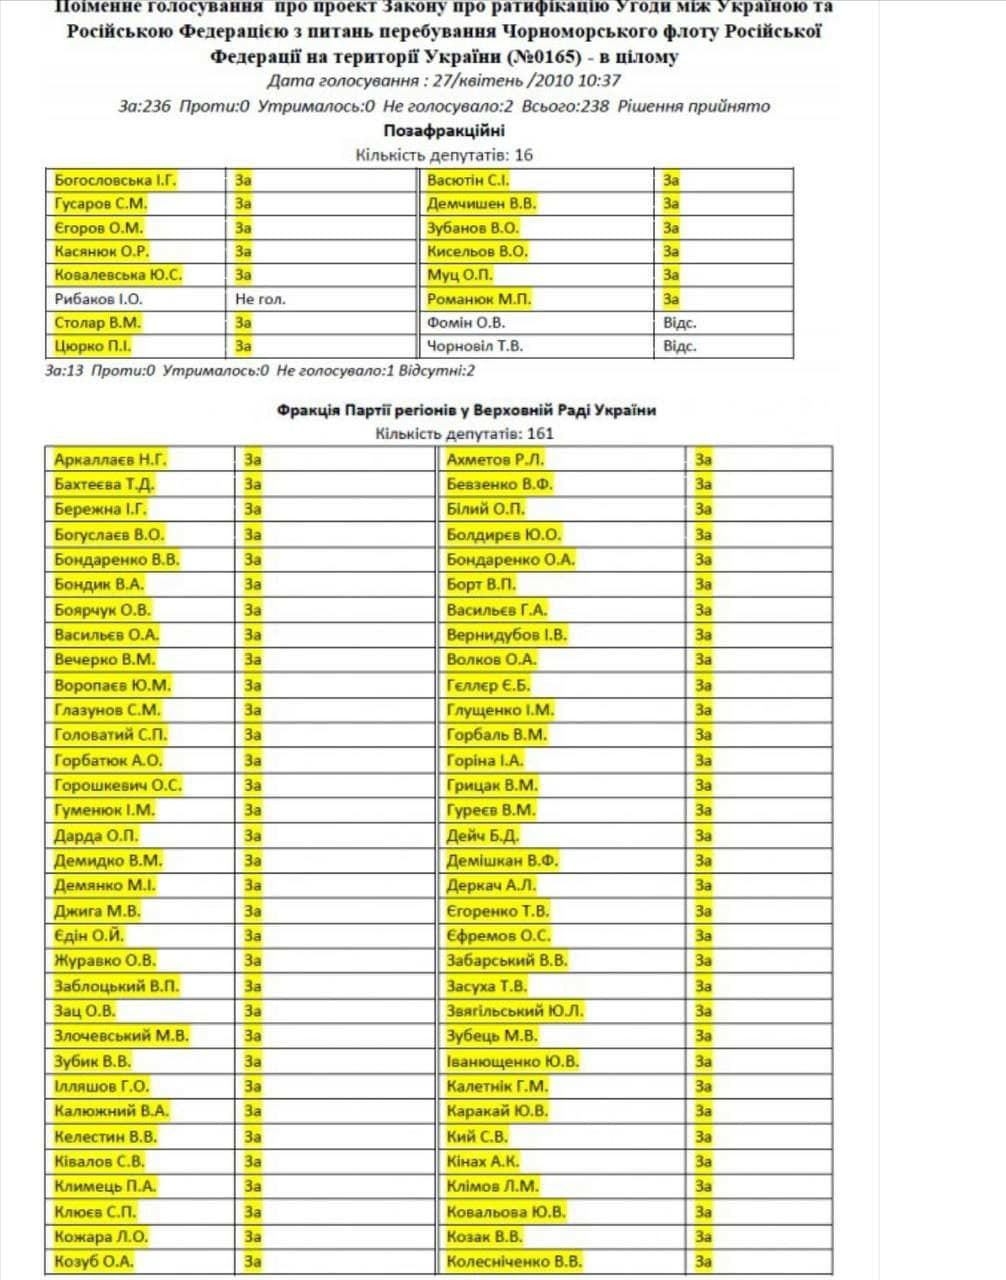 Опубликован список нардепов, которых СБУ проверит из-за Харьковских соглашений - 1 - изображение